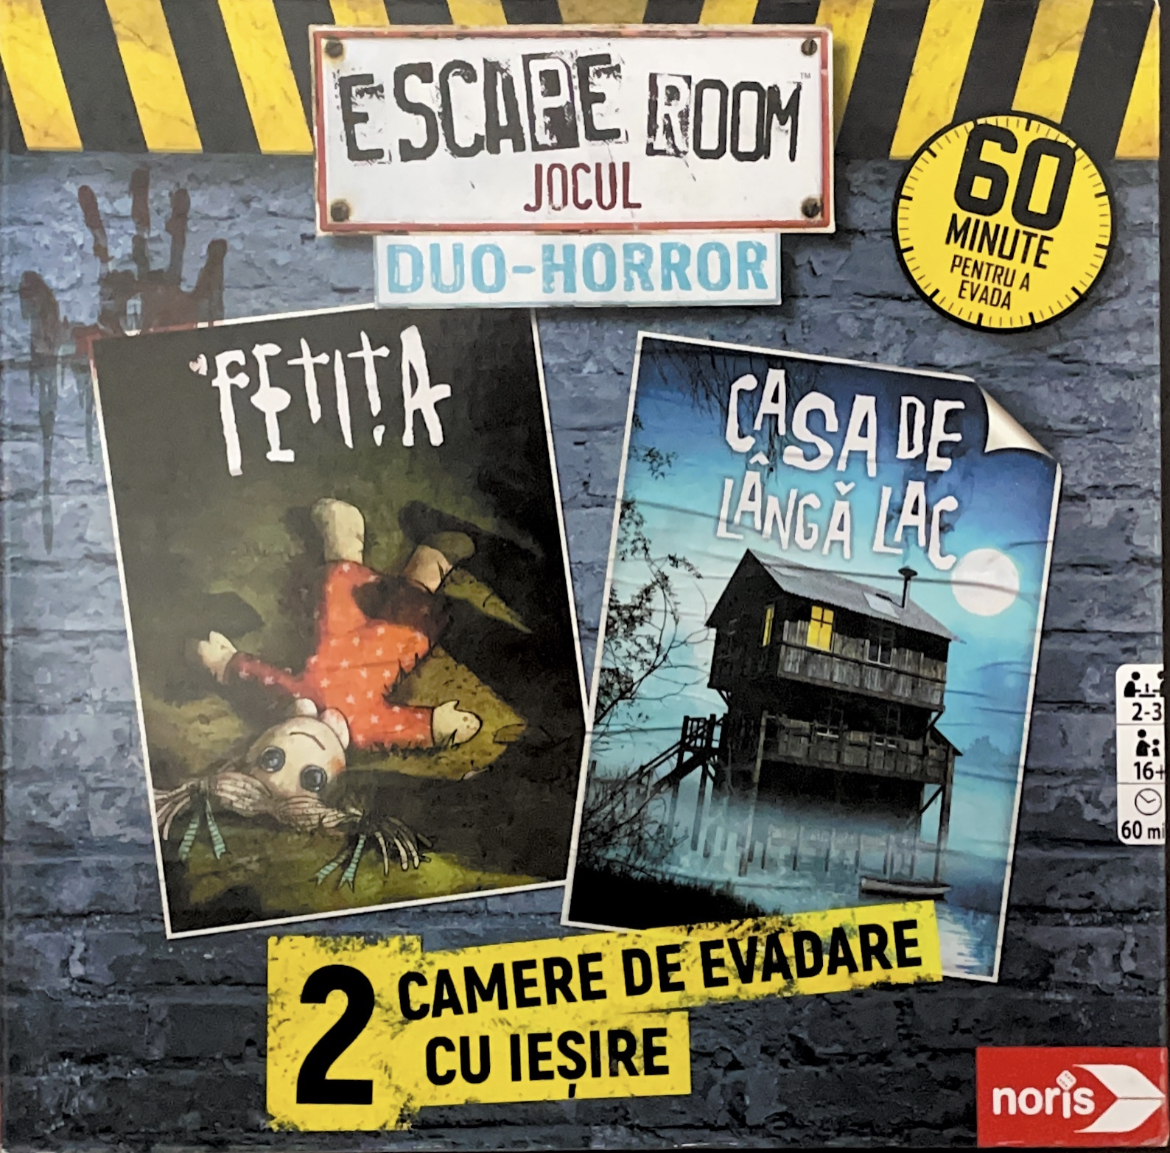 Board Games: Catan; Azul; Activity; Carcassonne și multe altele. Escape Room Jocul Duo-Horror;